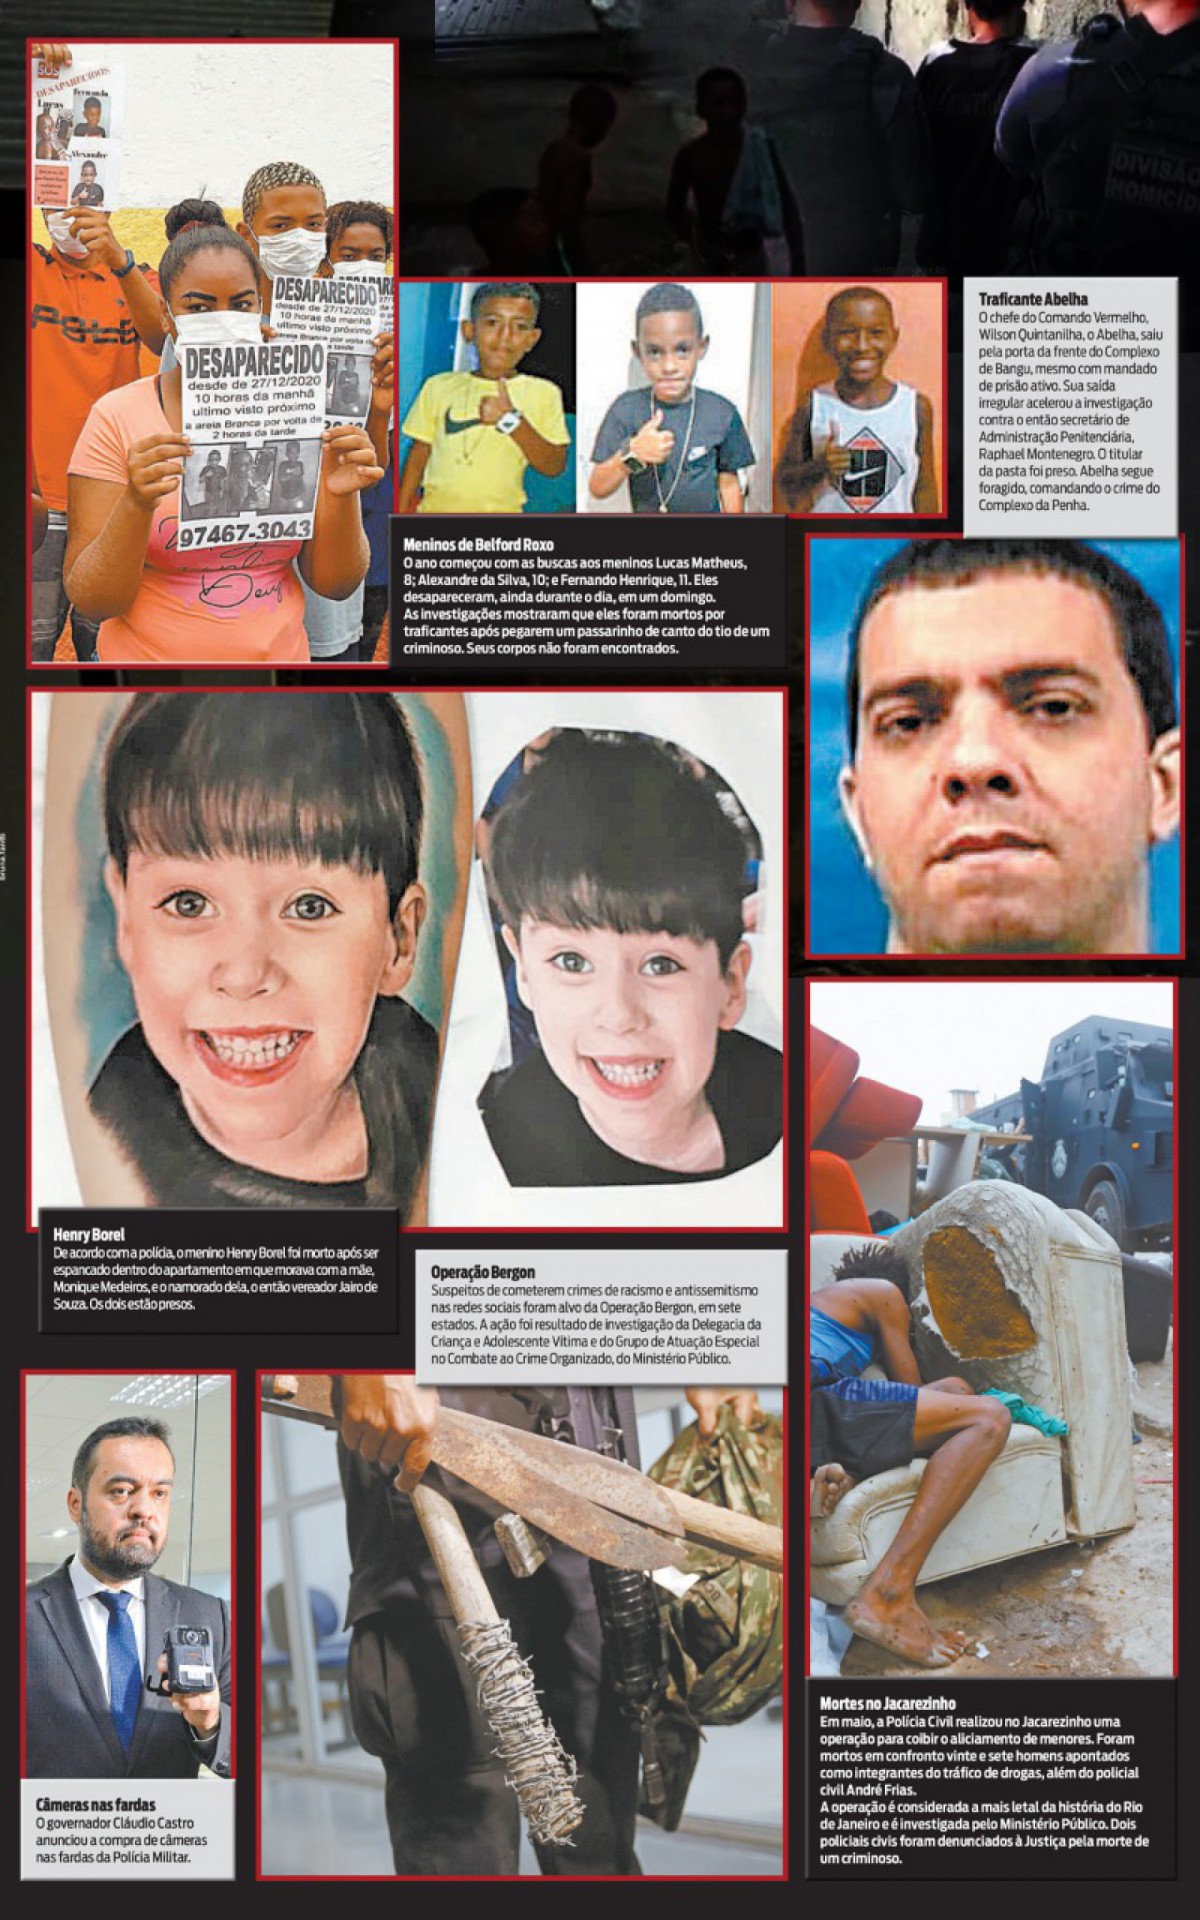 Crimes contra crianças, operação no Jacarezinho e saída irregular de traficante do presídio marcaram o ano - Arte O DIA